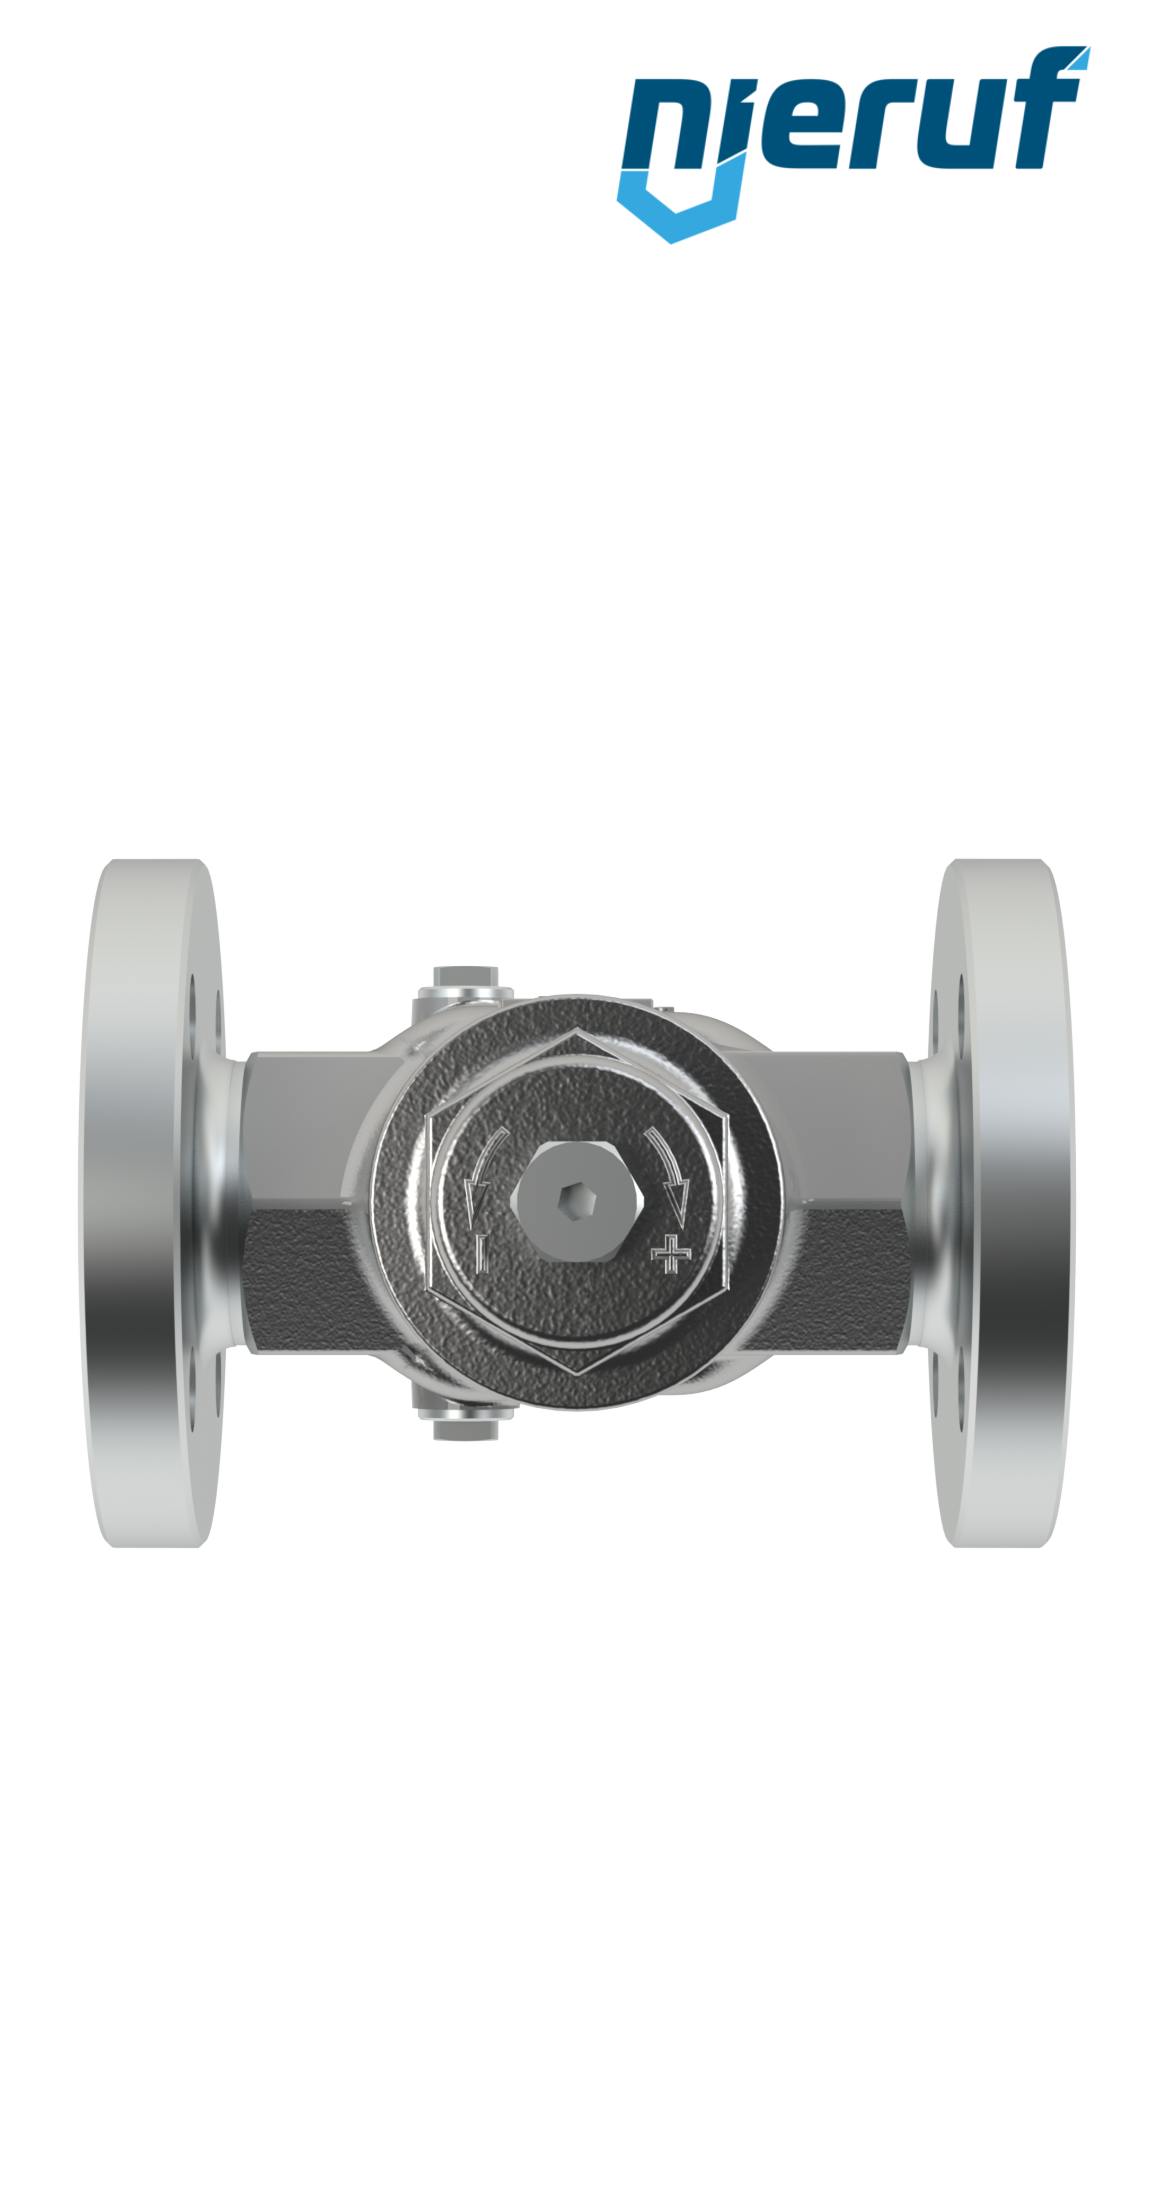 Piston-pressure reducing valve DN20 DM11 stainless steel FPM / FKM 2.0 - 20.0 bar